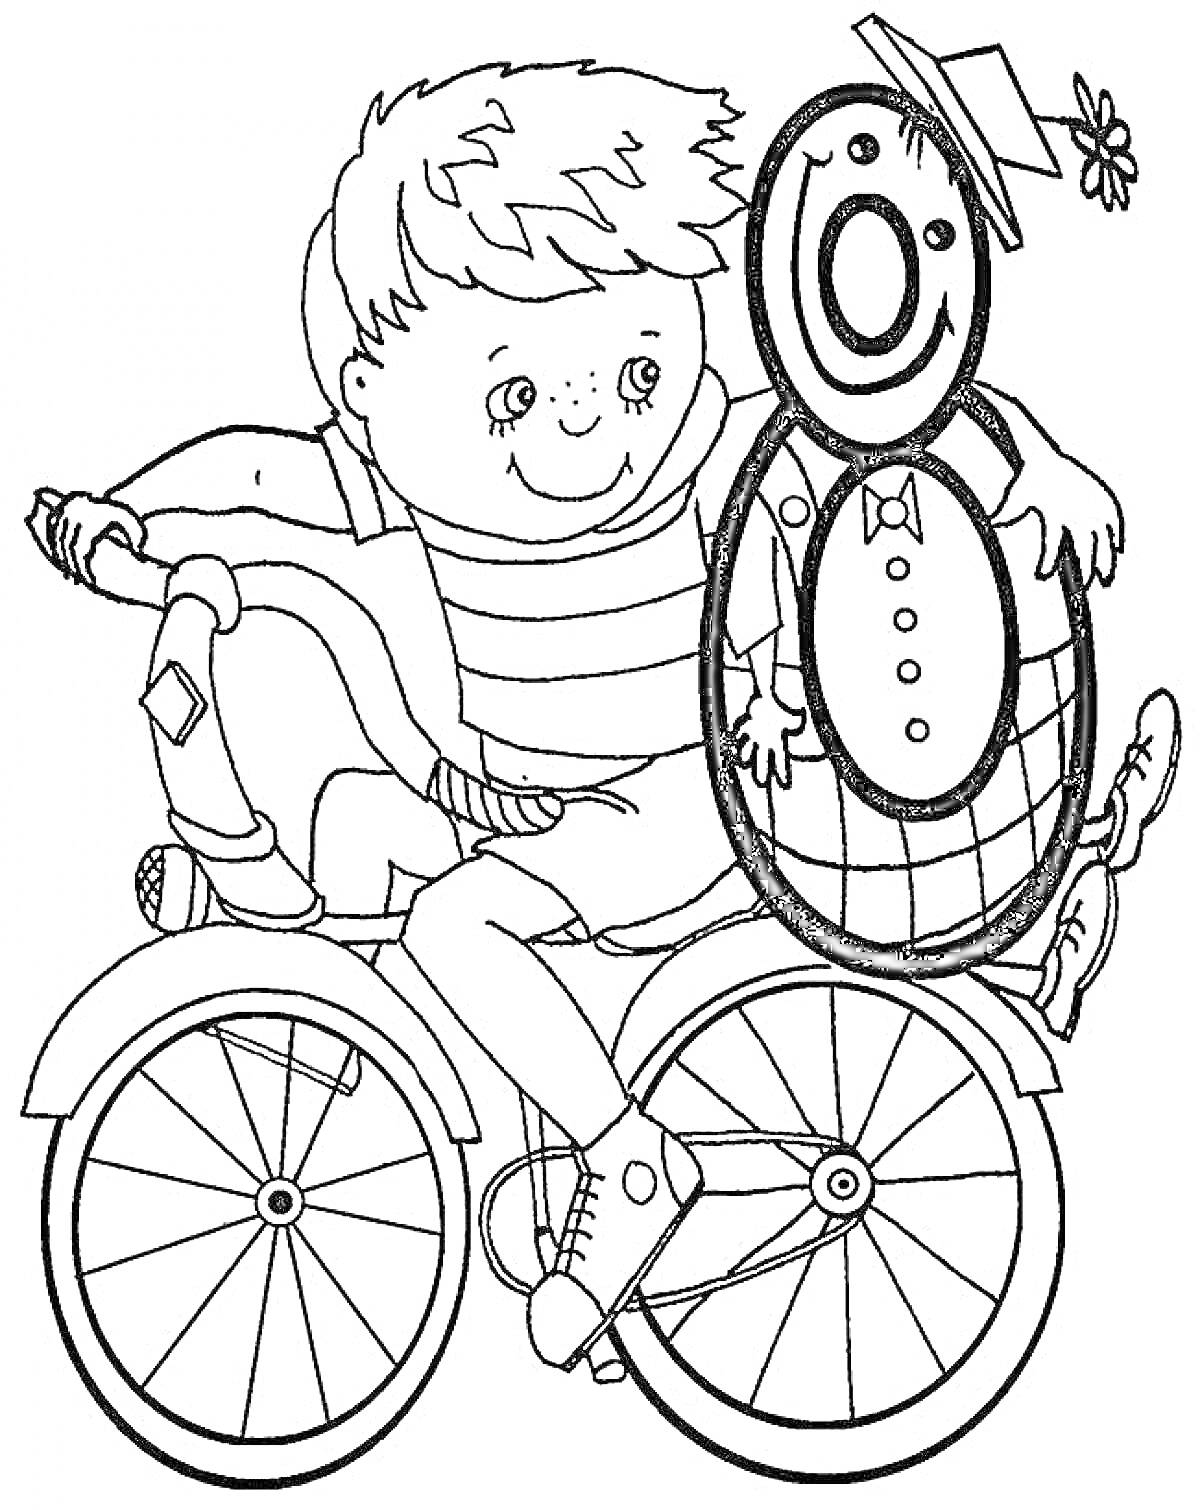 Раскраска Мальчик на велосипеде с говорящим снеговиком в форме цифры 8